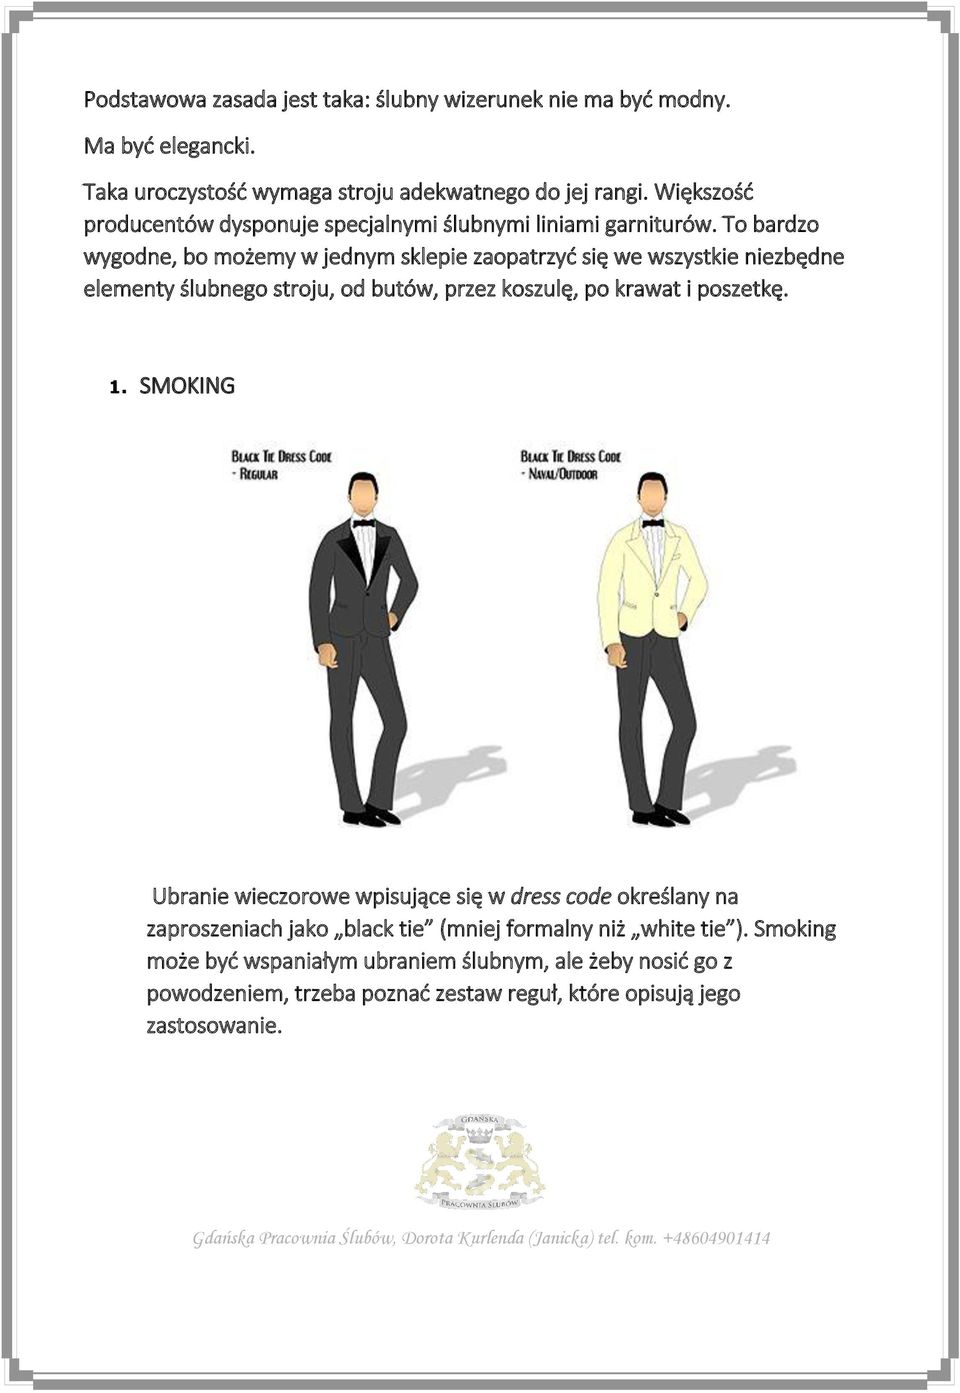 To bardzo wygodne, bo możemy w jednym sklepie zaopatrzyć się we wszystkie niezbędne elementy ślubnego stroju, od butów, przez koszulę, po krawat i poszetkę. 1.